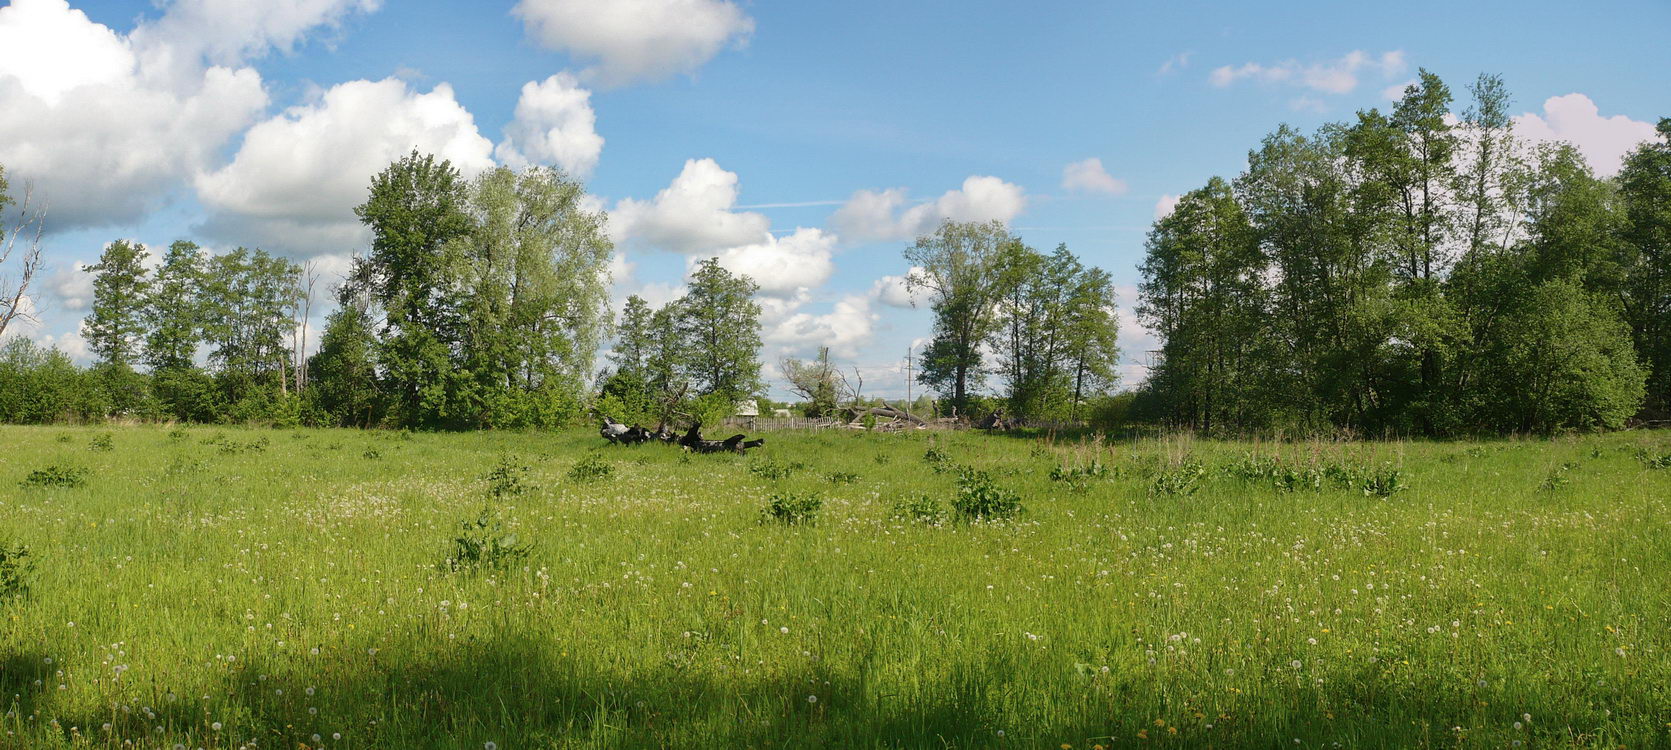 Урочище Низкое поле, изображение ландшафта.